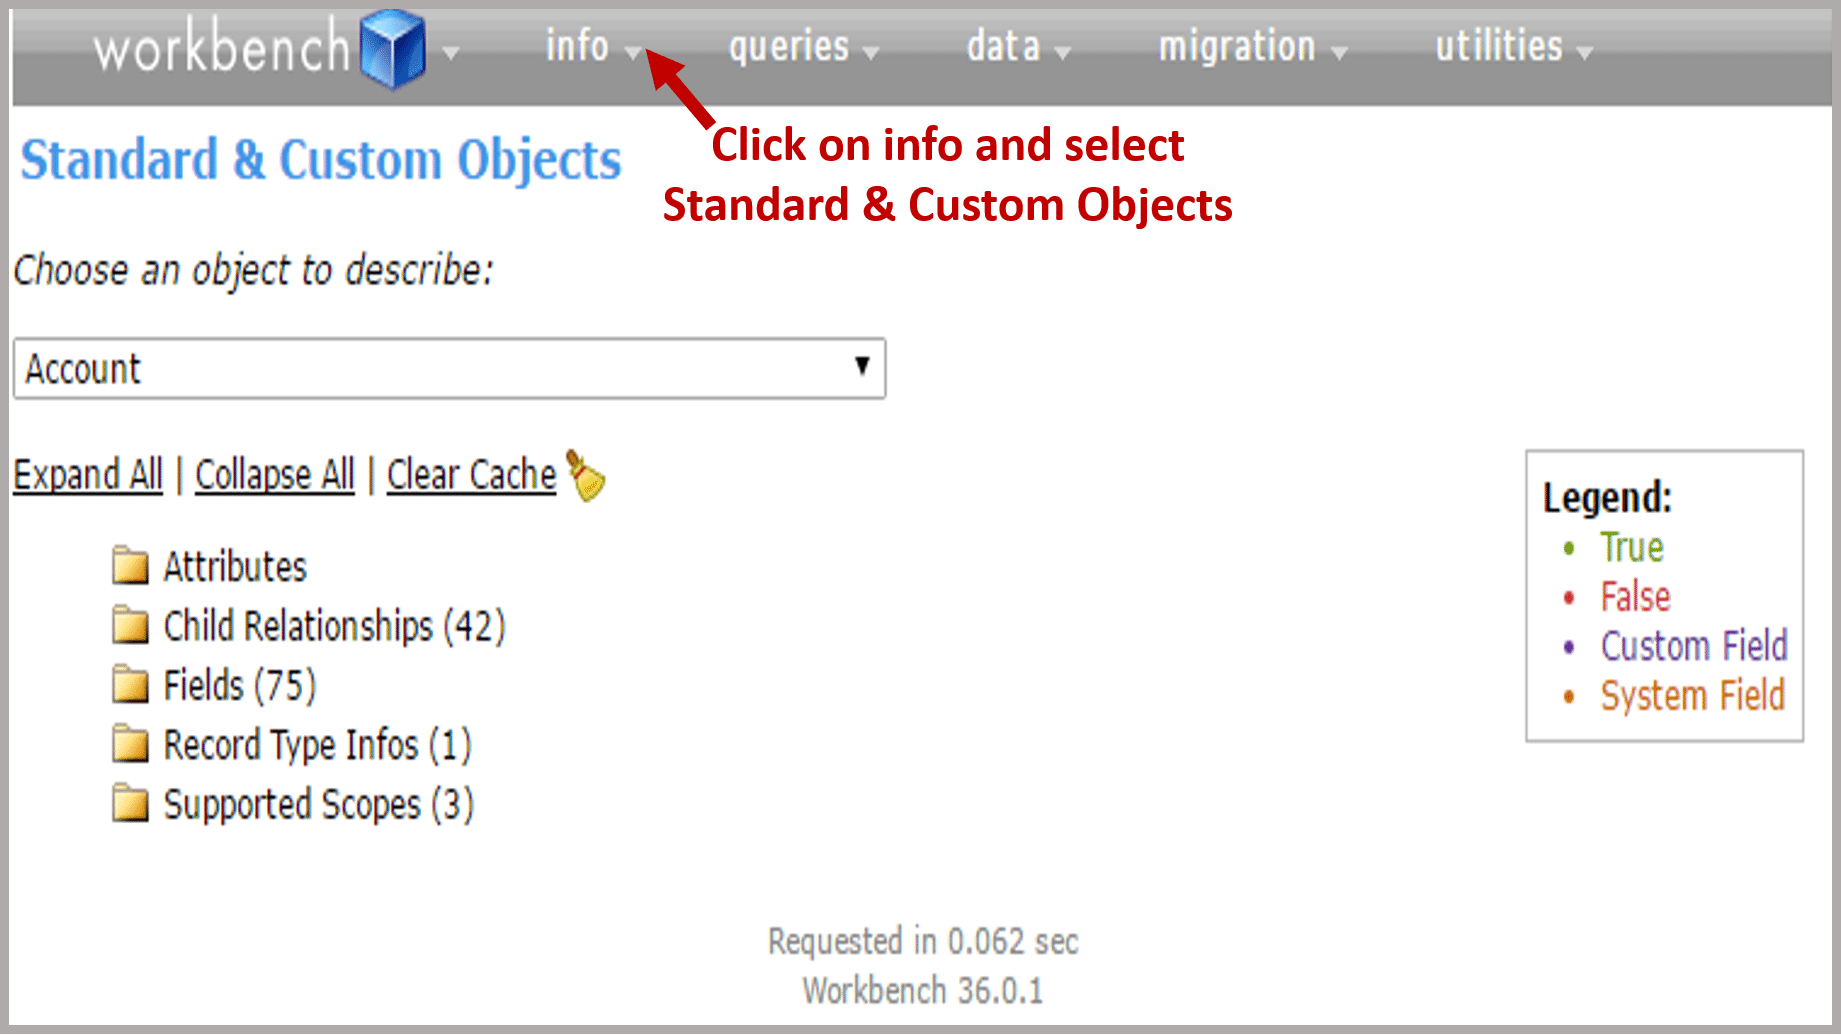 Standard & Custom Objects